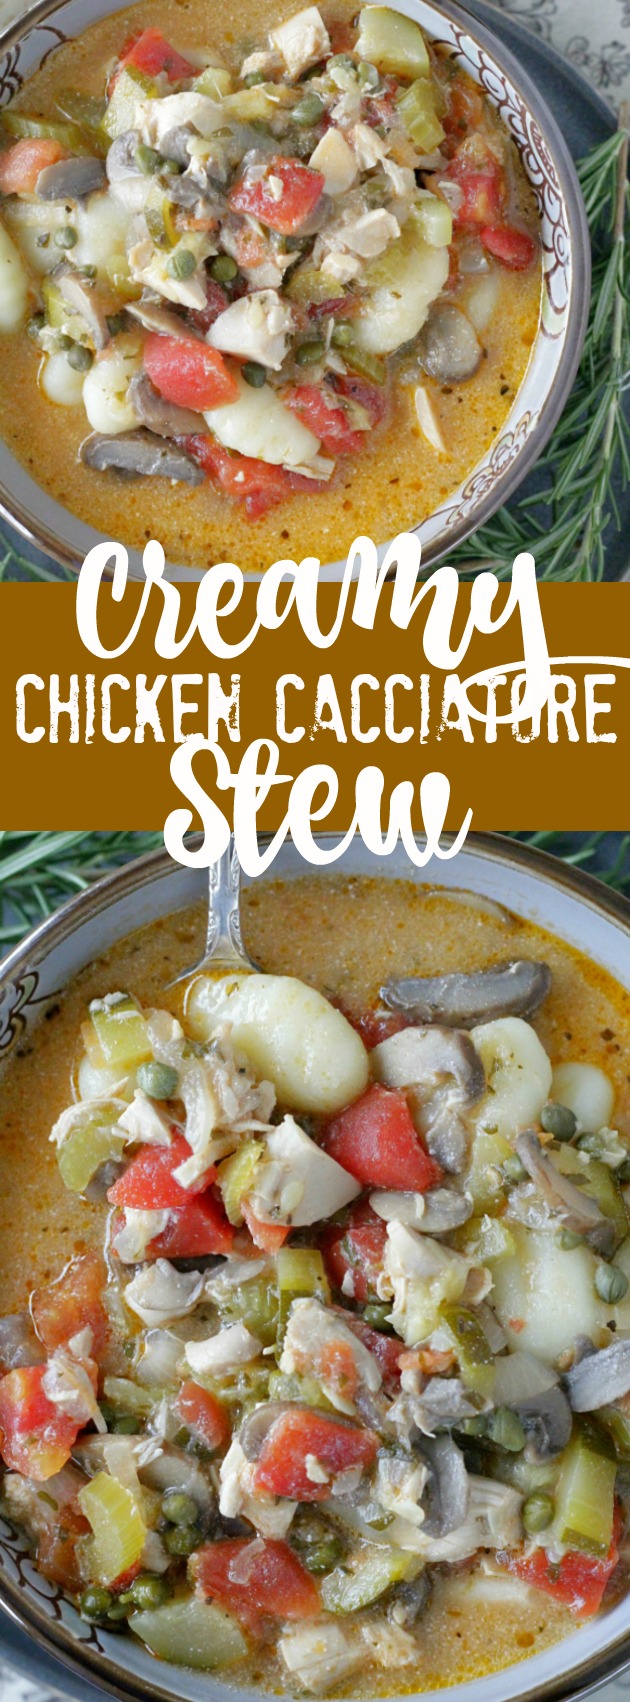 Creamy Chicken Cacciatore Stew